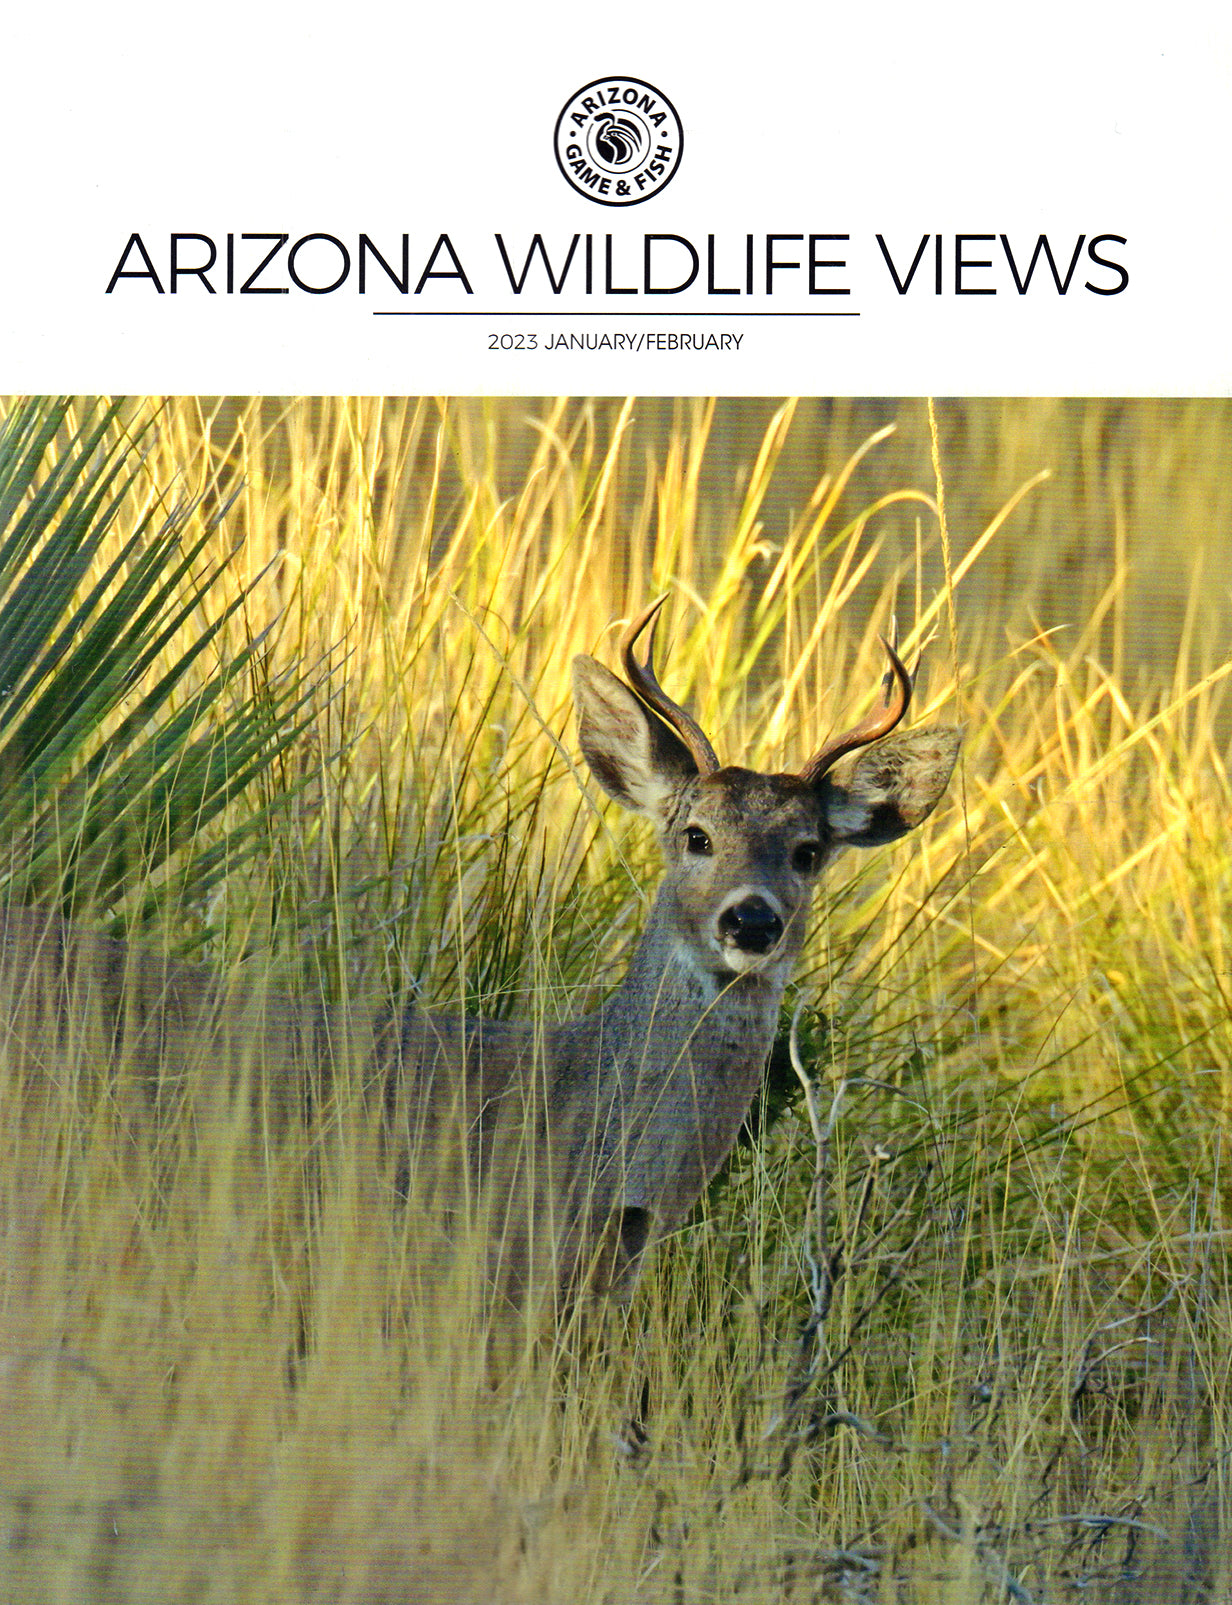 Arizona Wildlife Views